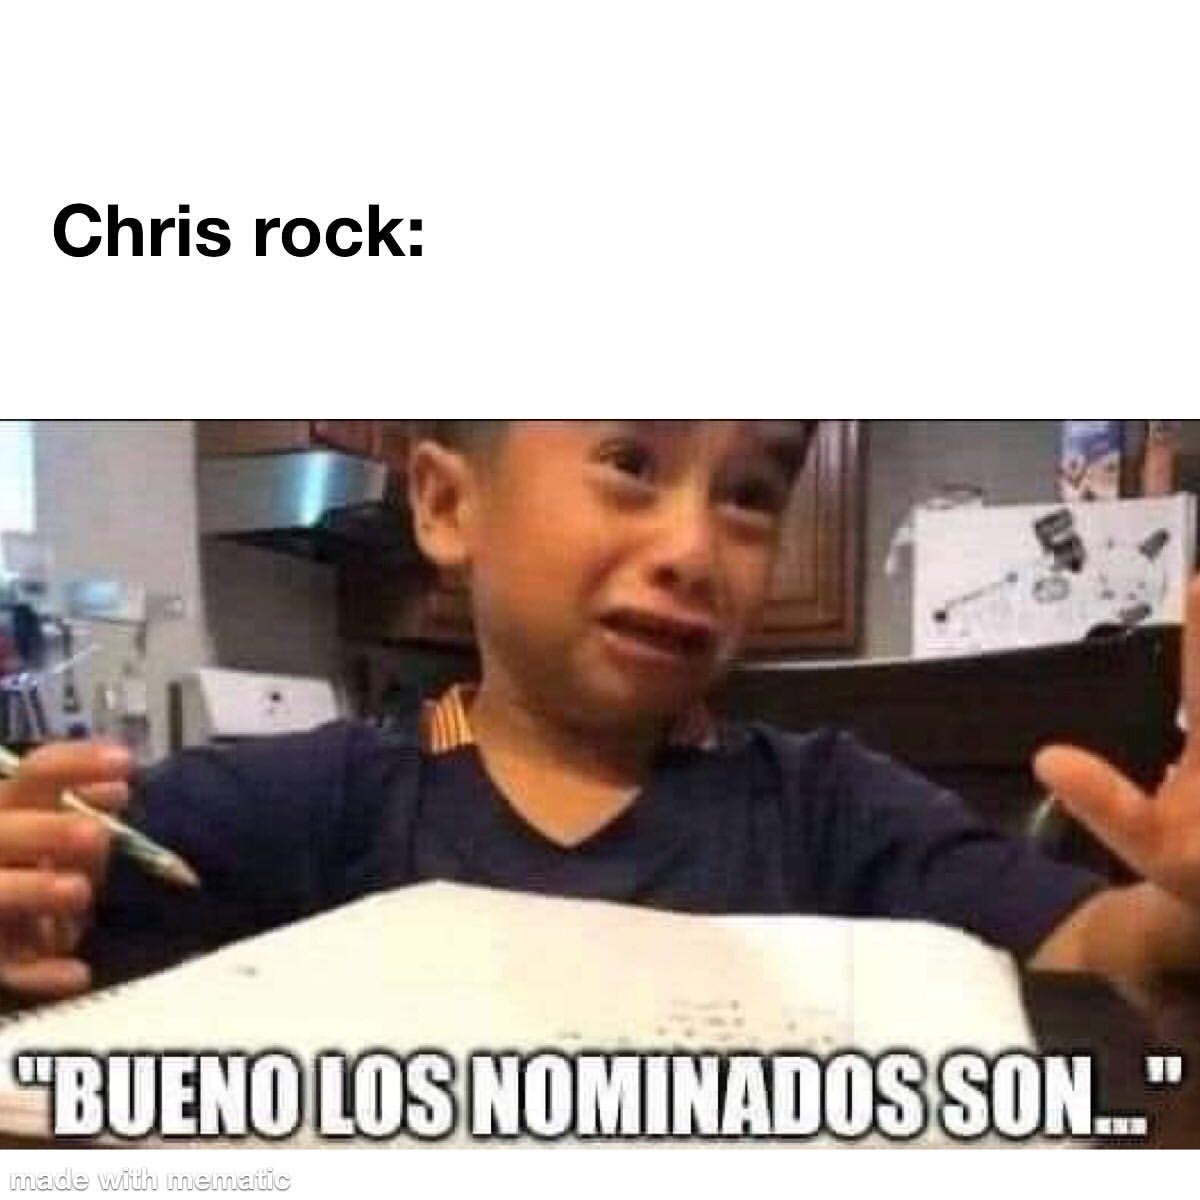 Chris rock: Bueno los nominados son...